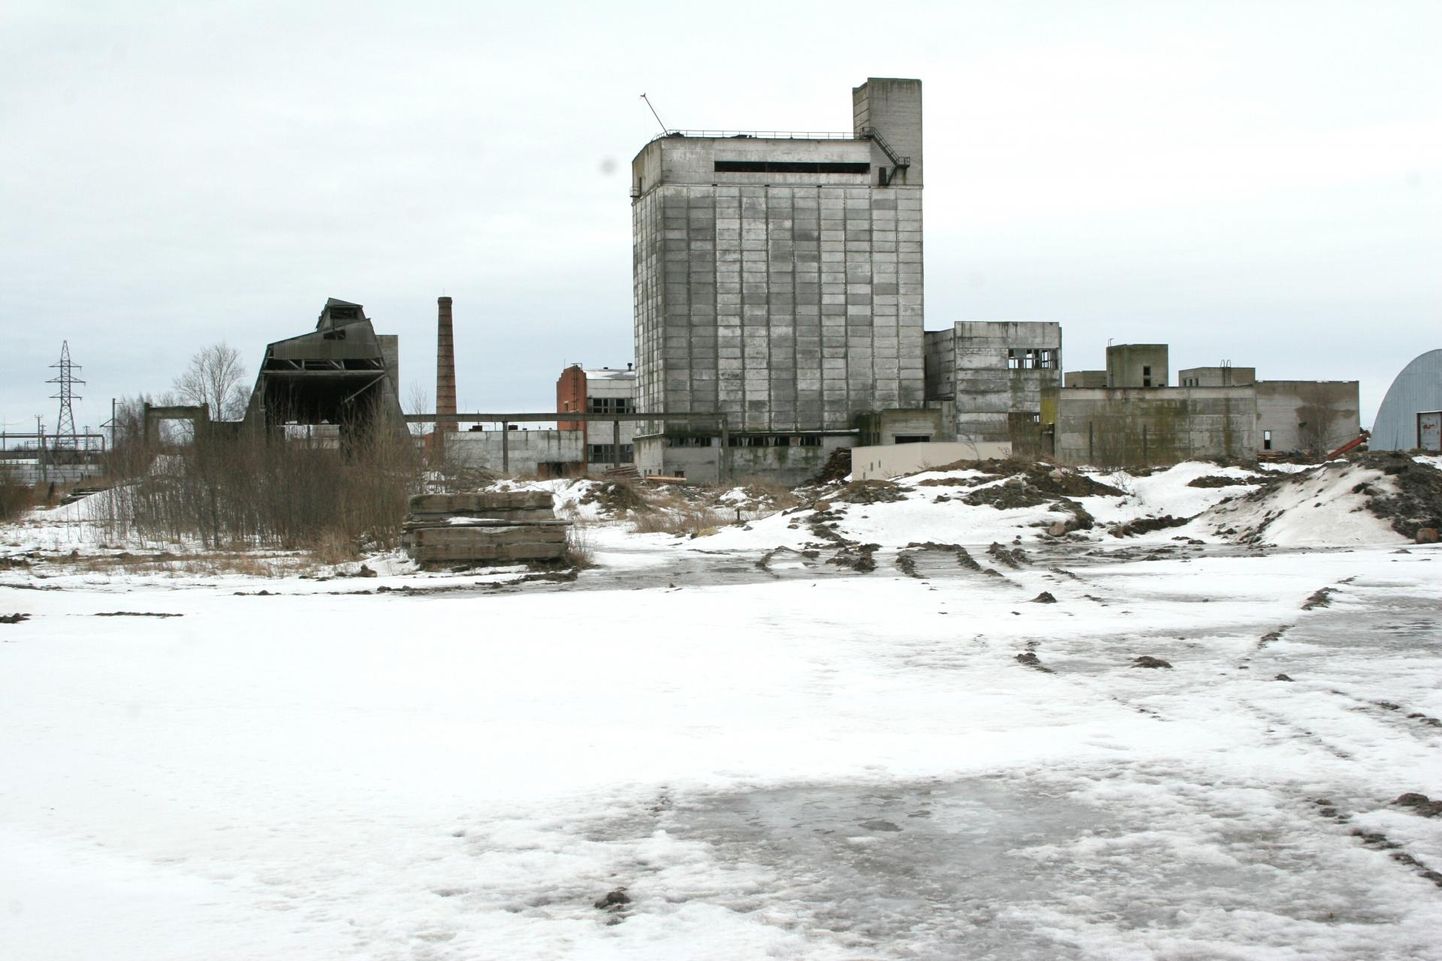 Sotsialistliku põllumajanduse suurtootmise kunagine lipulaev Pärnu majanditevaheline seafarm jaanuaris 2006.